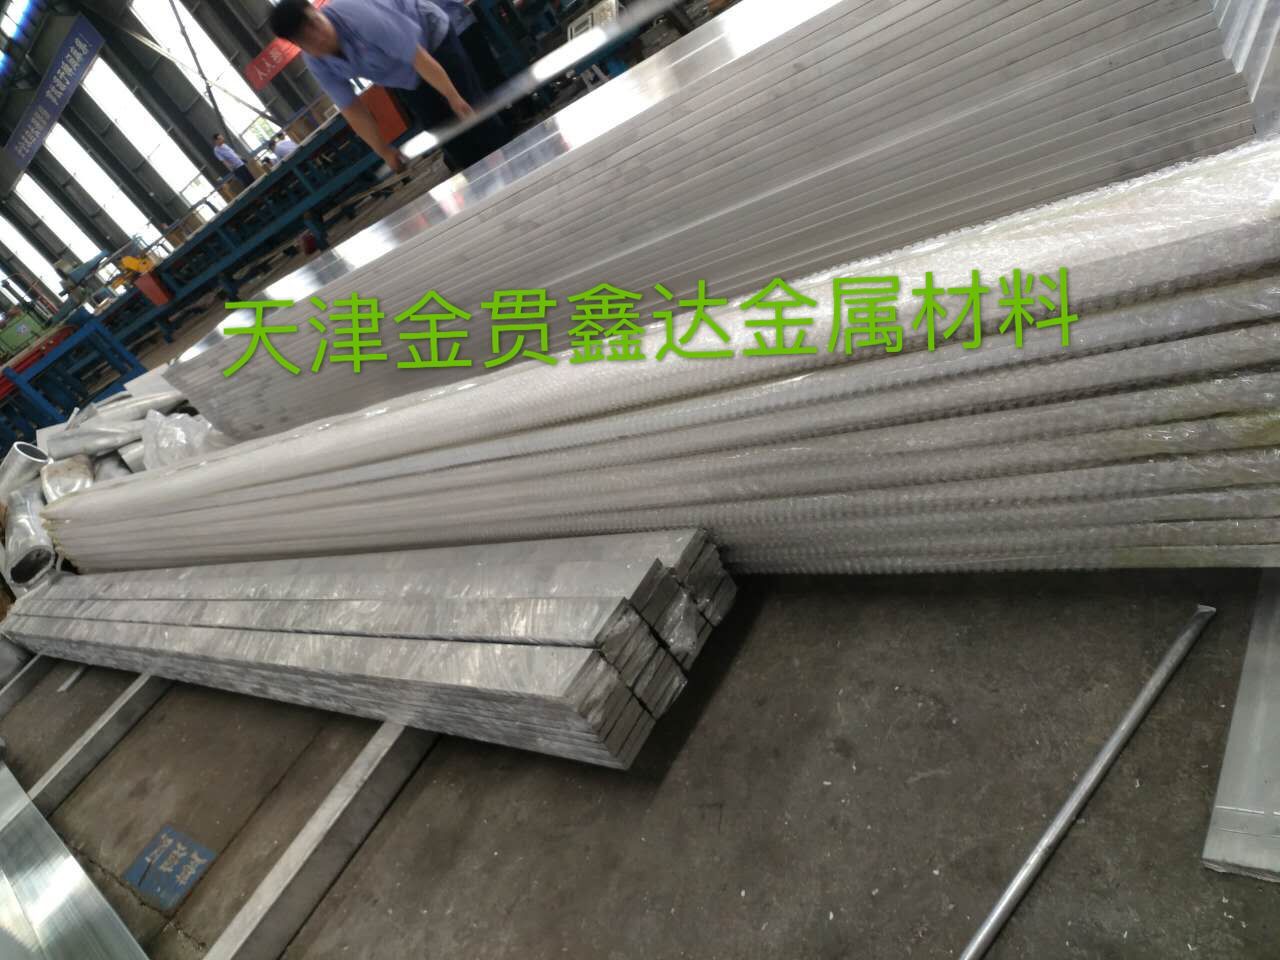 鋁排加工廠 工業鋁型材鋁排 1070鋁排